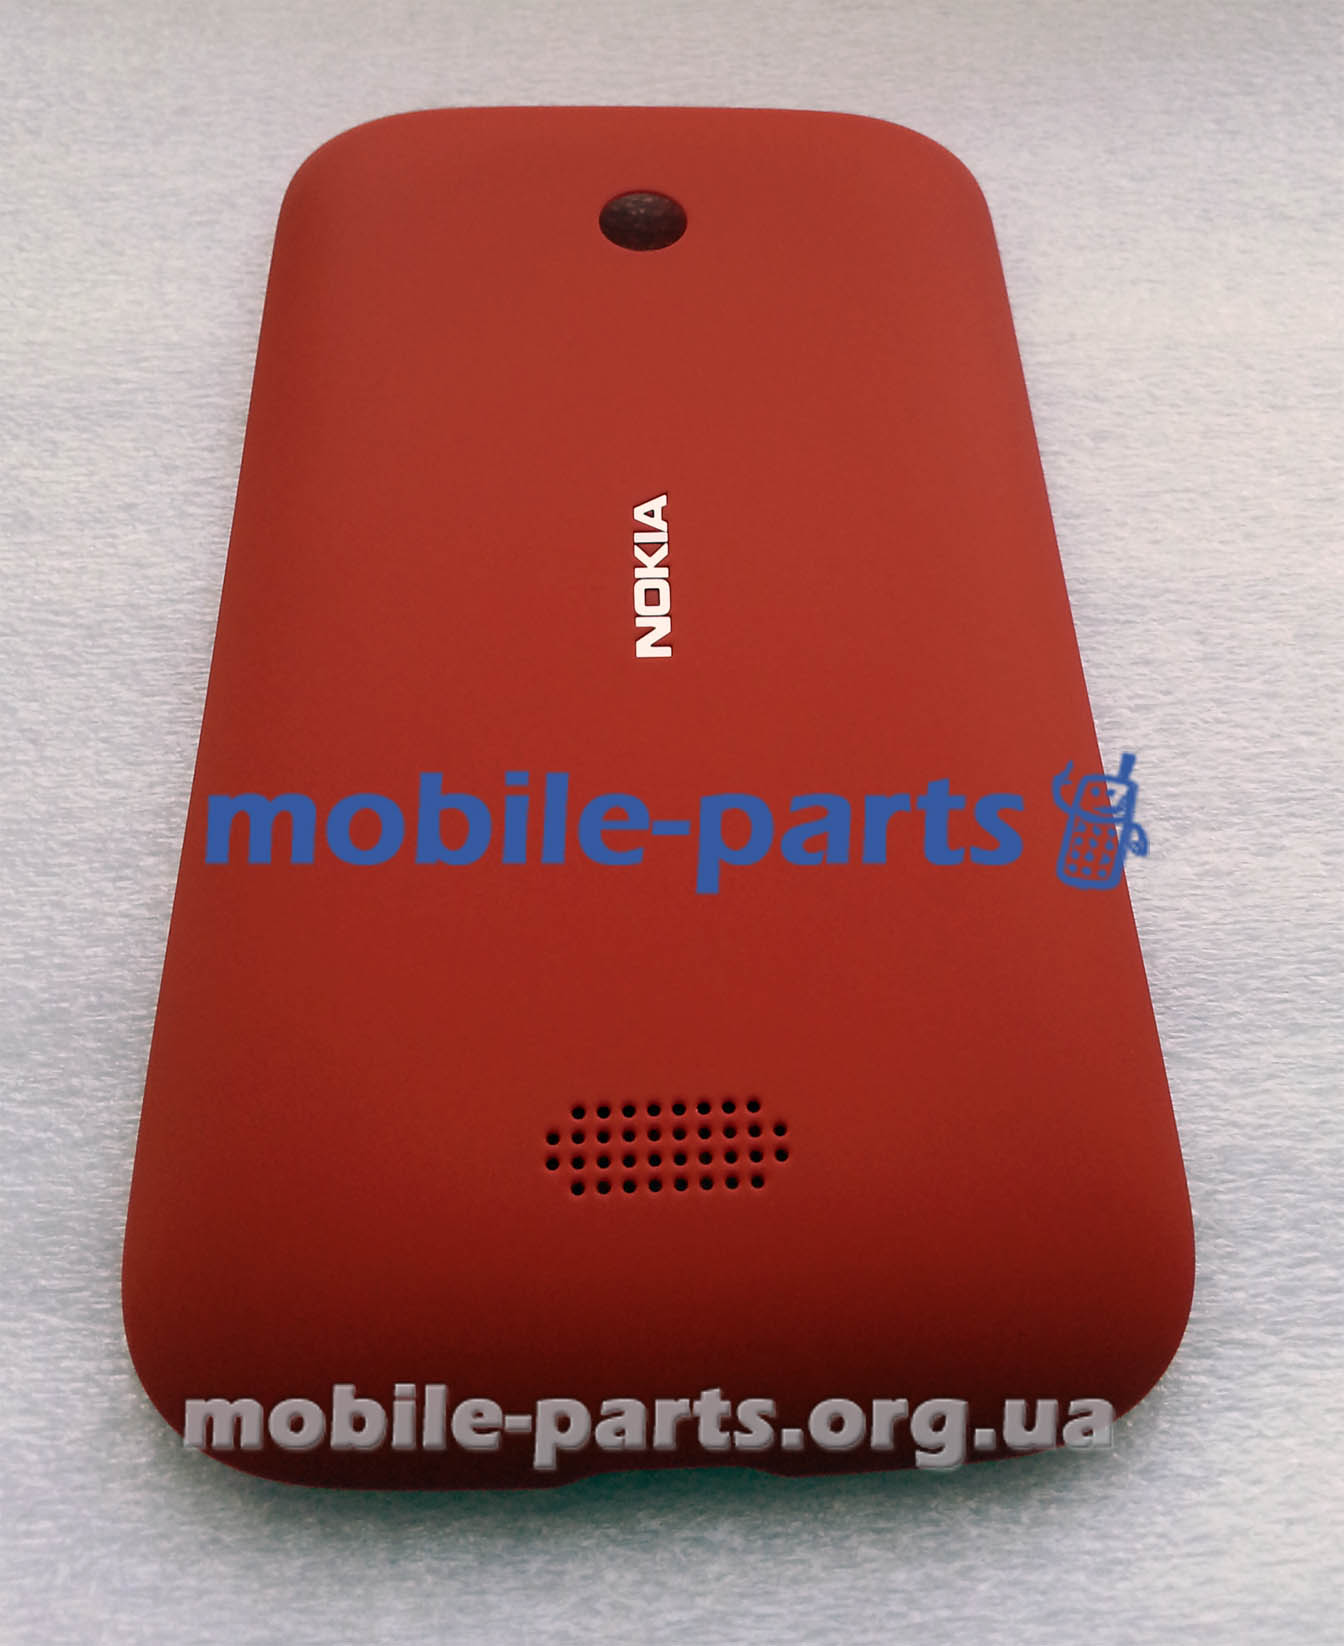 На складе появились задние крышки для Nokia Lumia 510